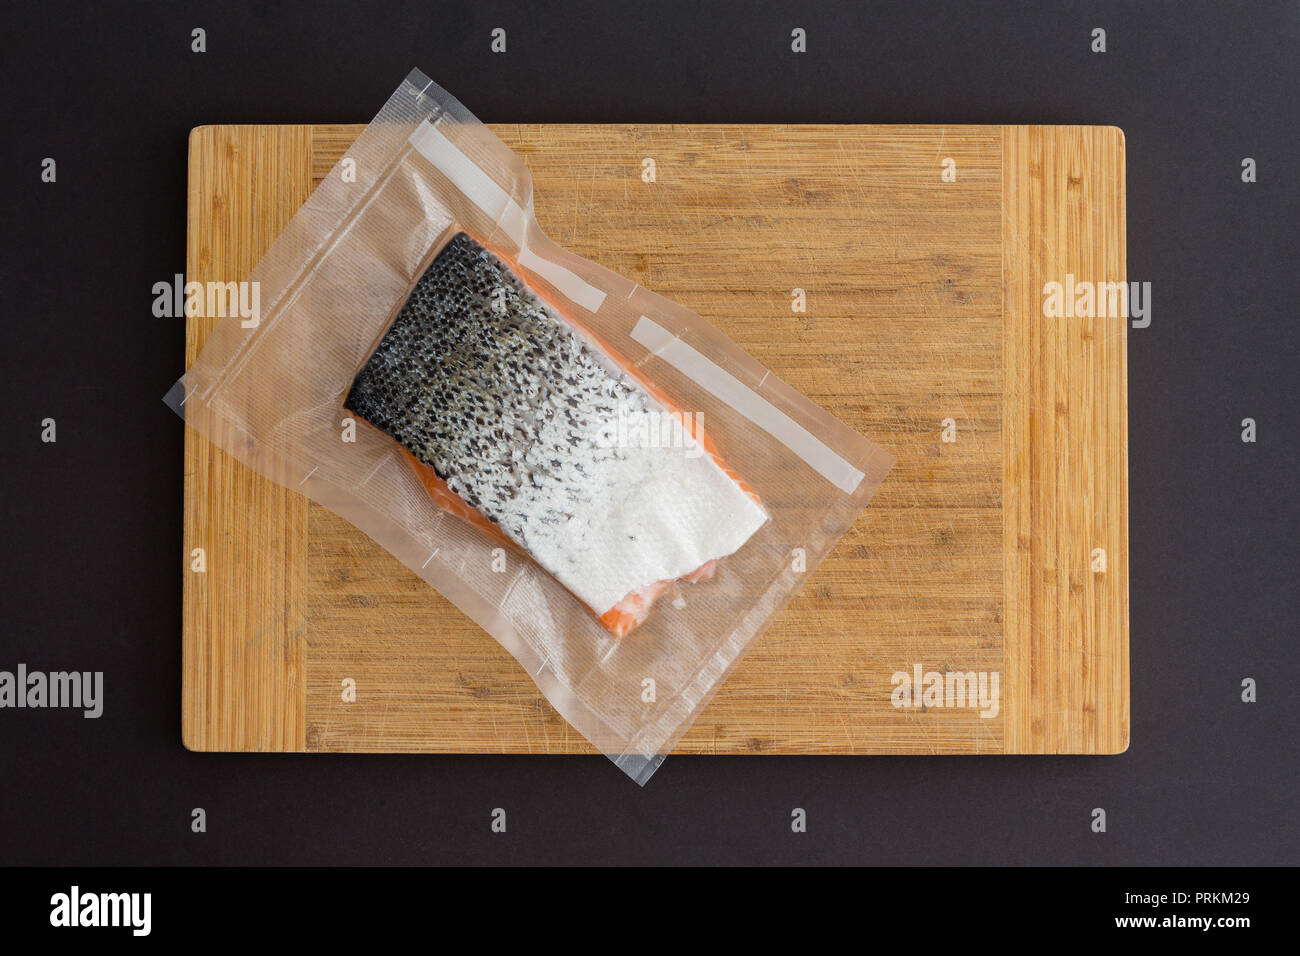 La porzione di gourmet freschi Salmone atlantico in un pacchetto vuoto di plastica chiara pronto fro congelamento giacente su un bordo di bambù su uno sfondo nero Foto Stock